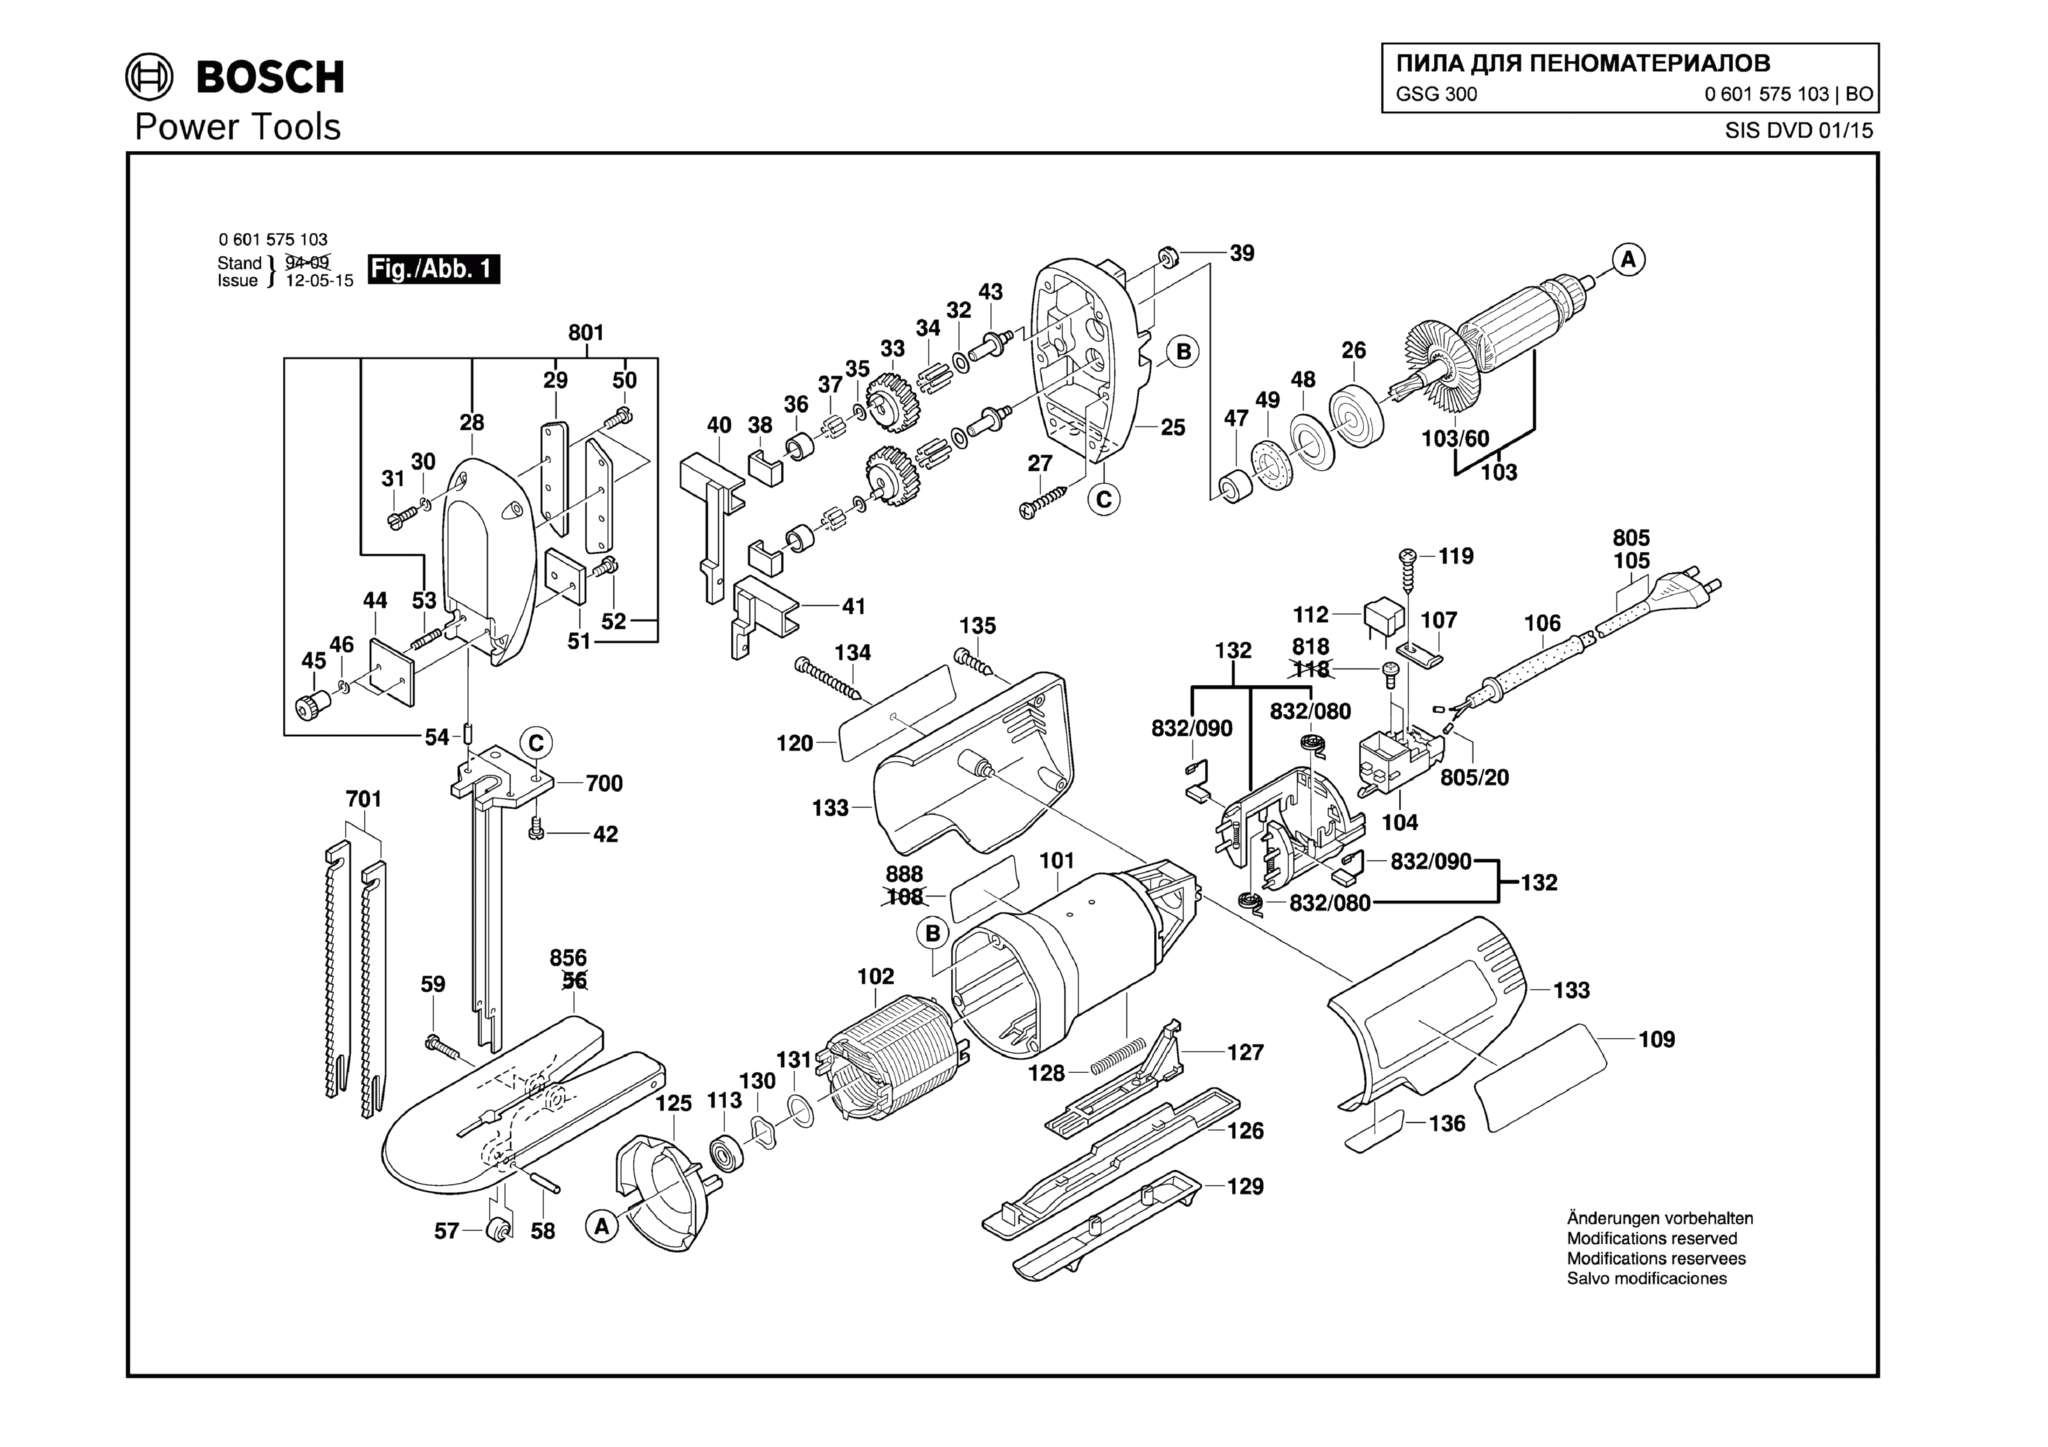 Запчасти, схема и деталировка Bosch GSG 300 (ТИП 0601575103)